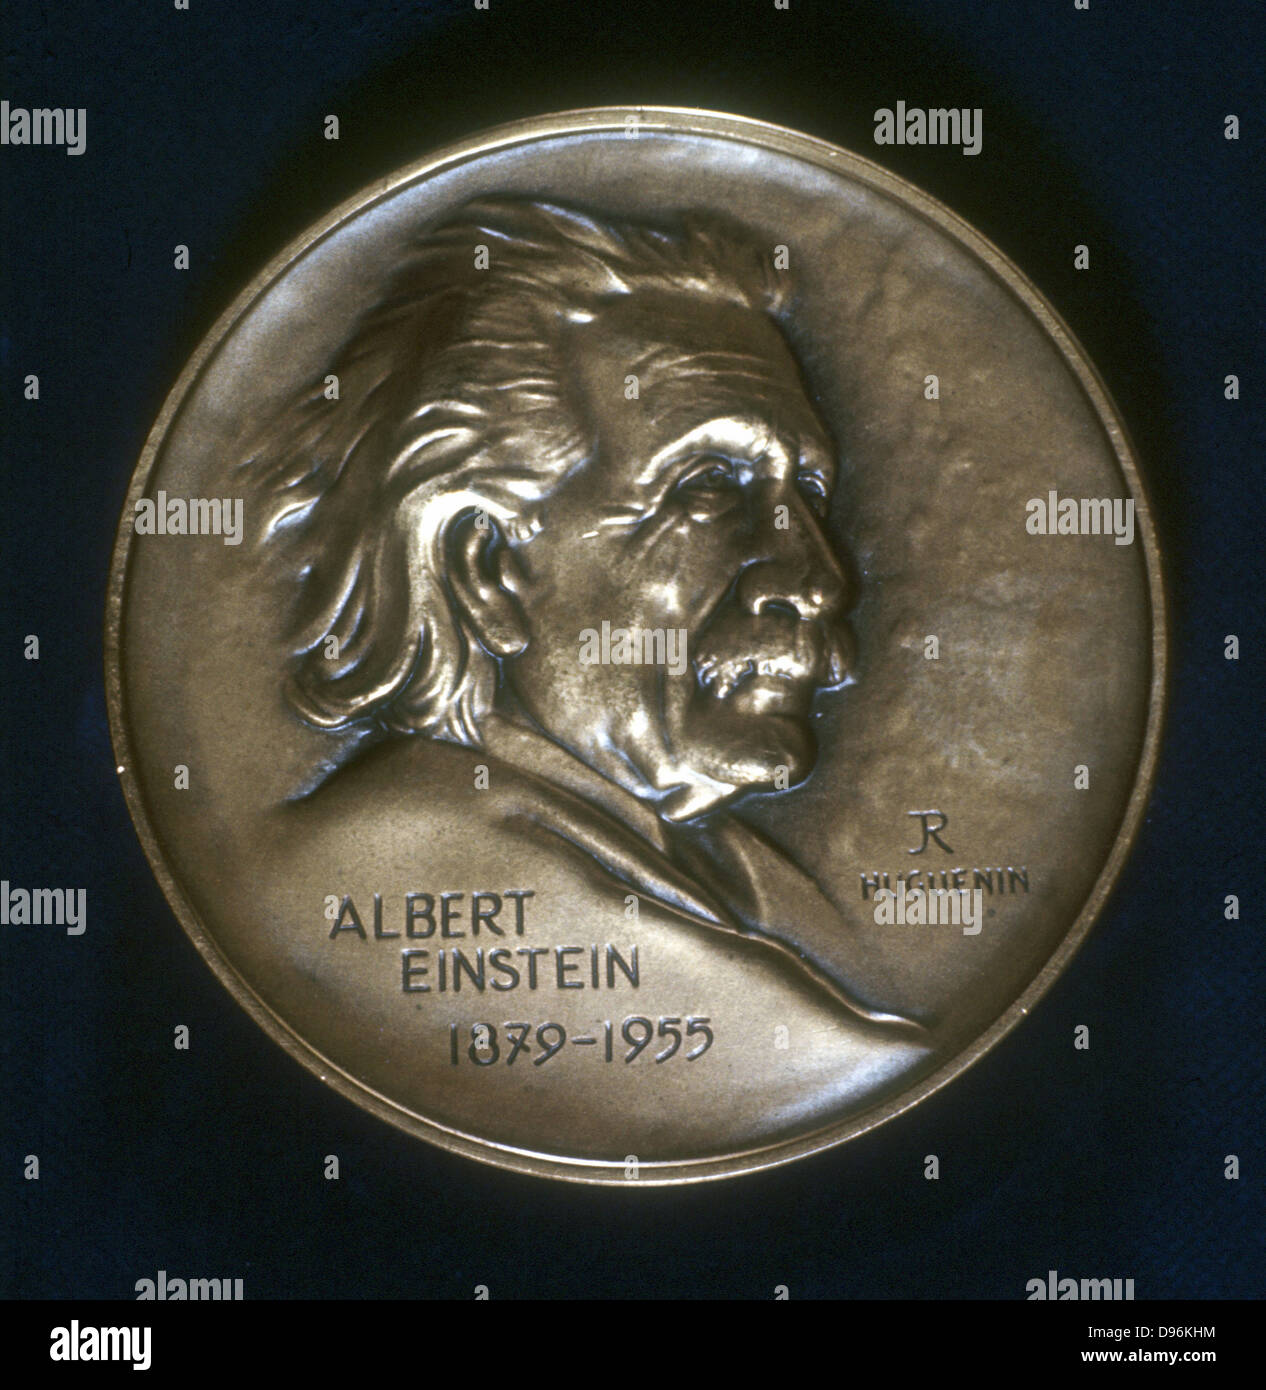 Albert Einstein (1879-1955), physicien germano-suisse-américain, de l'avers d'une médaille commémorative. Banque D'Images